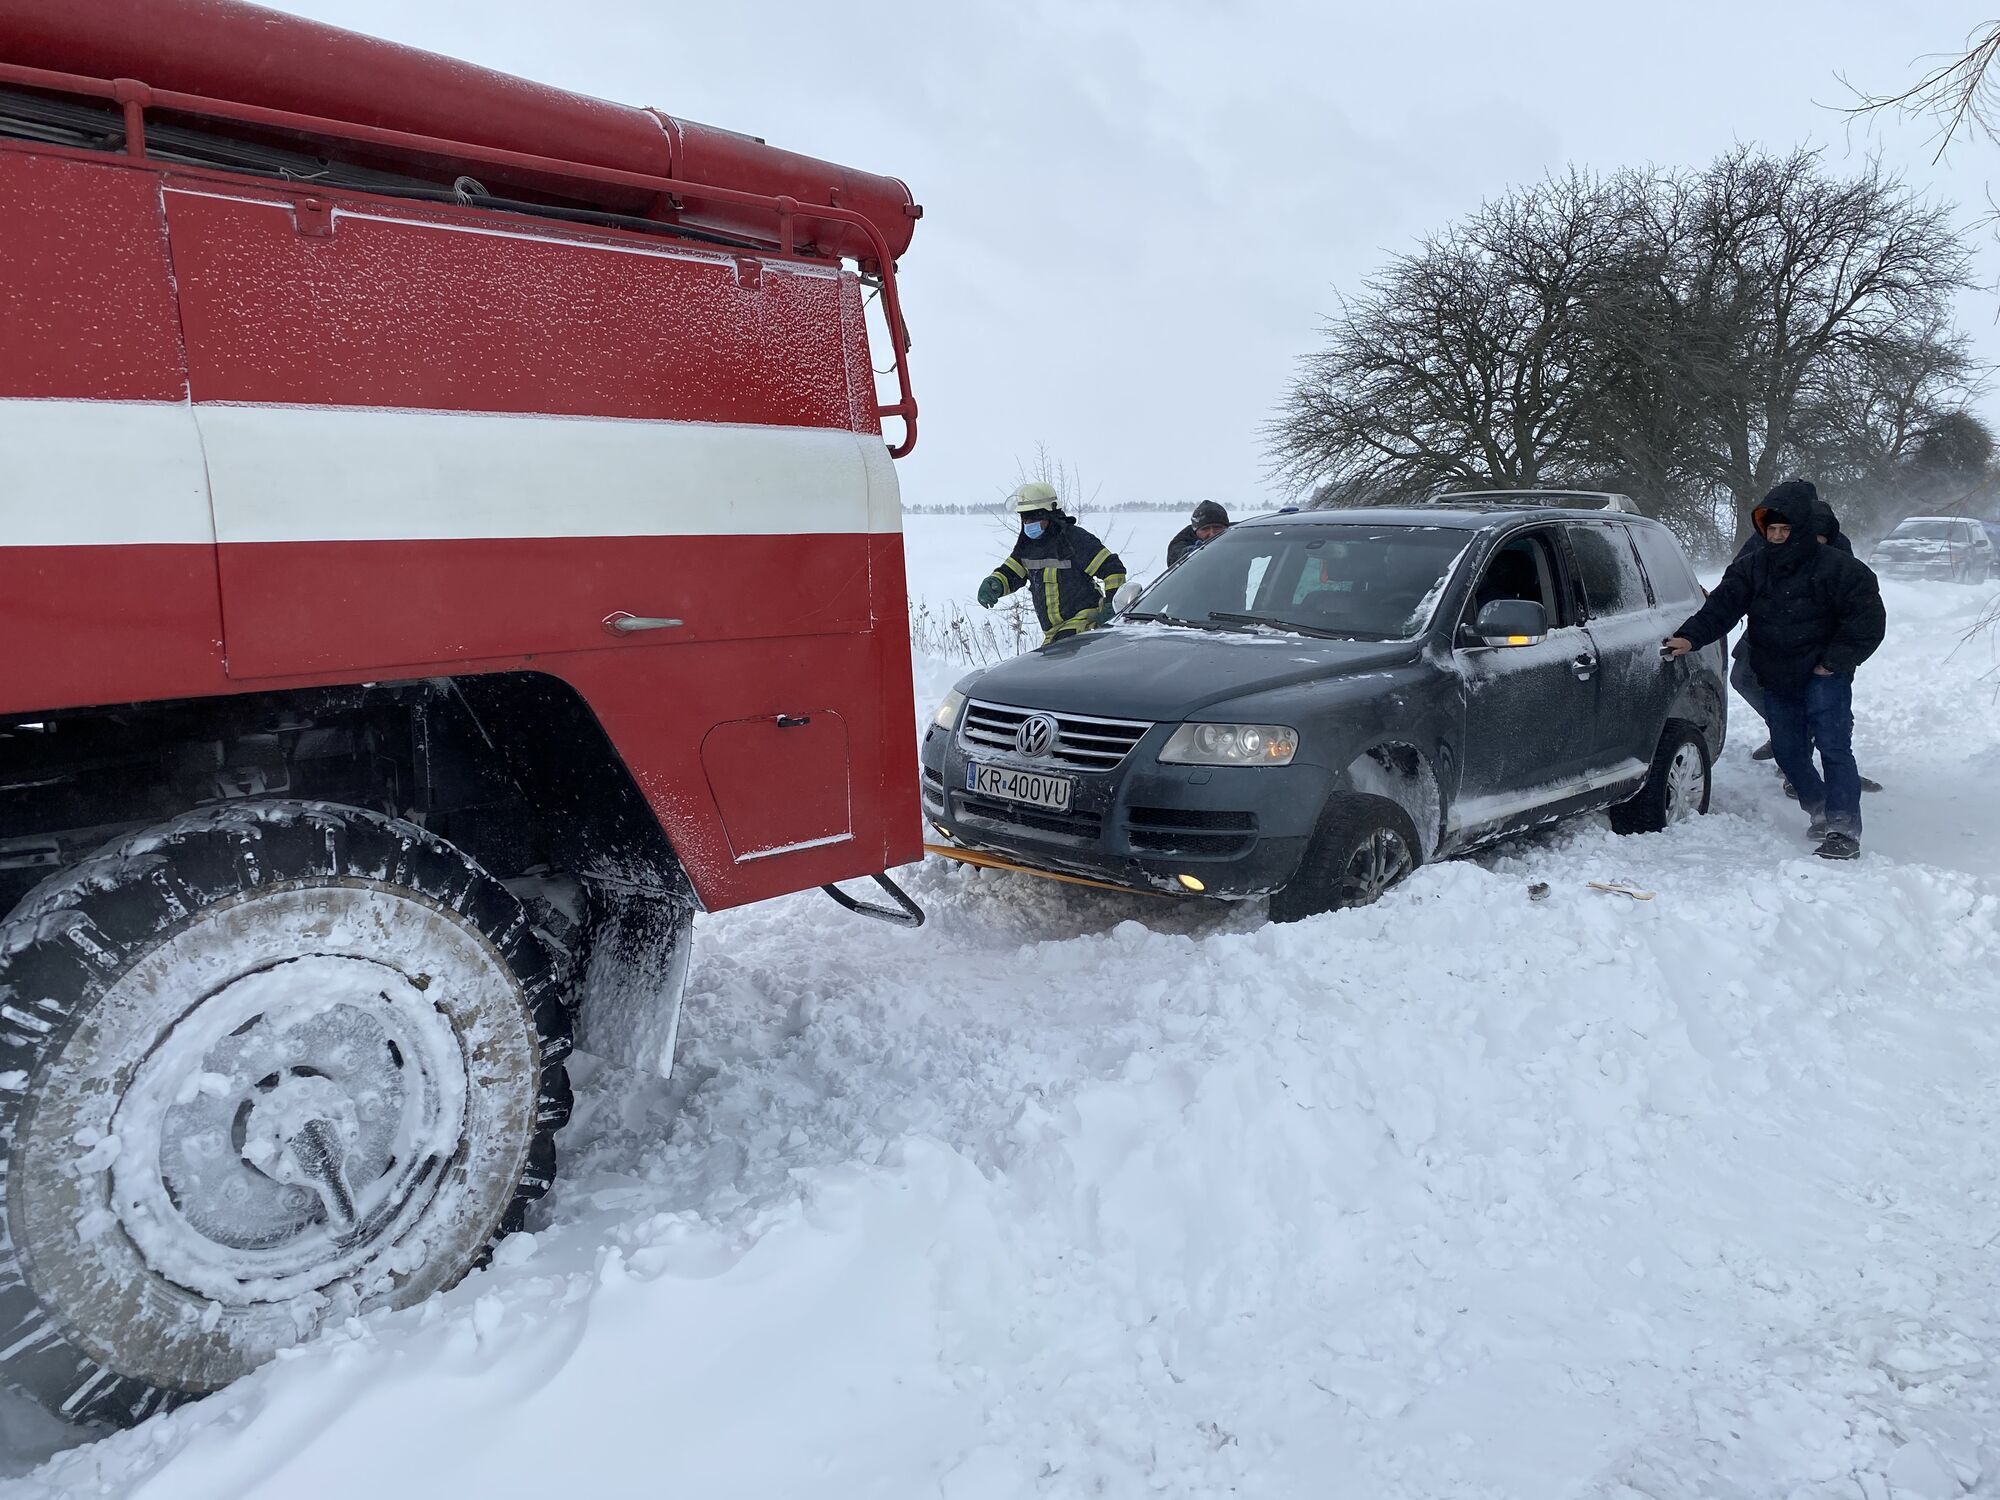 Київська область: із снігового полону рятувальники звільнили 5 авто, всередині яких були люди похилого віку, діти та вагітна жінка, і отримали публікацію-подяку